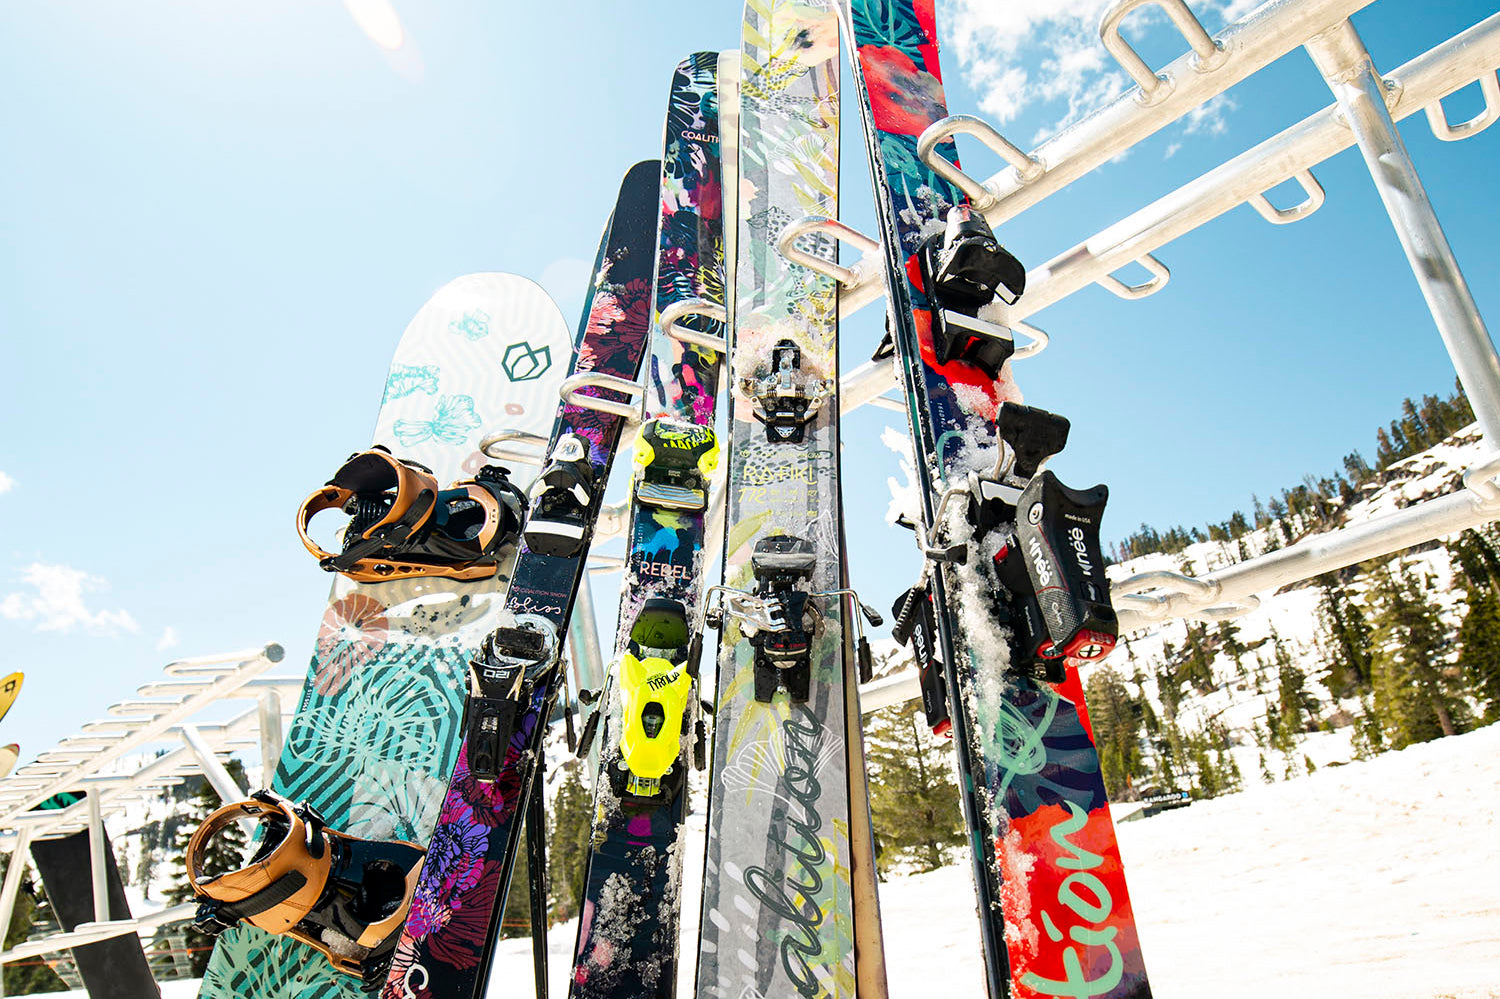 Coalition Snow Rafiki Powder Skis, Women's Skis, Best Women's Skis, Women Skis Sale, Powder Skis